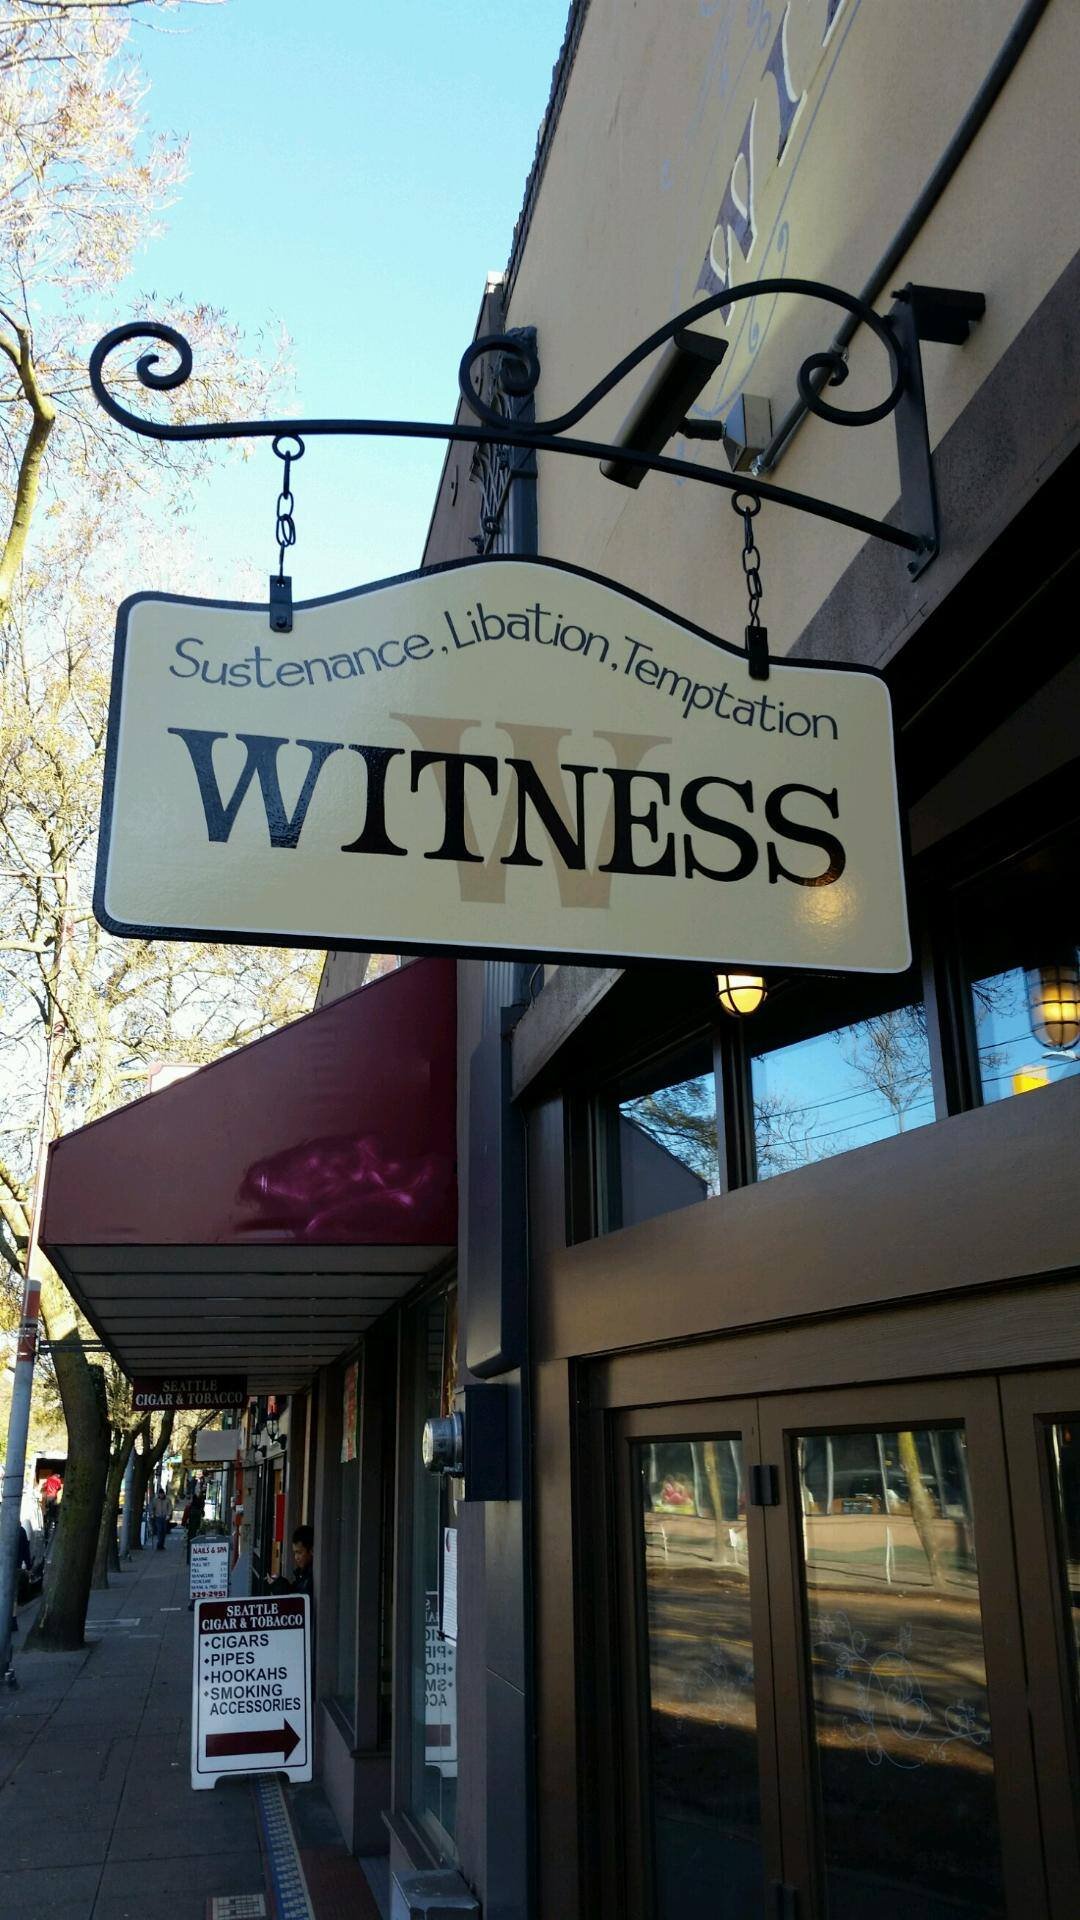  image description: image of witness sign 